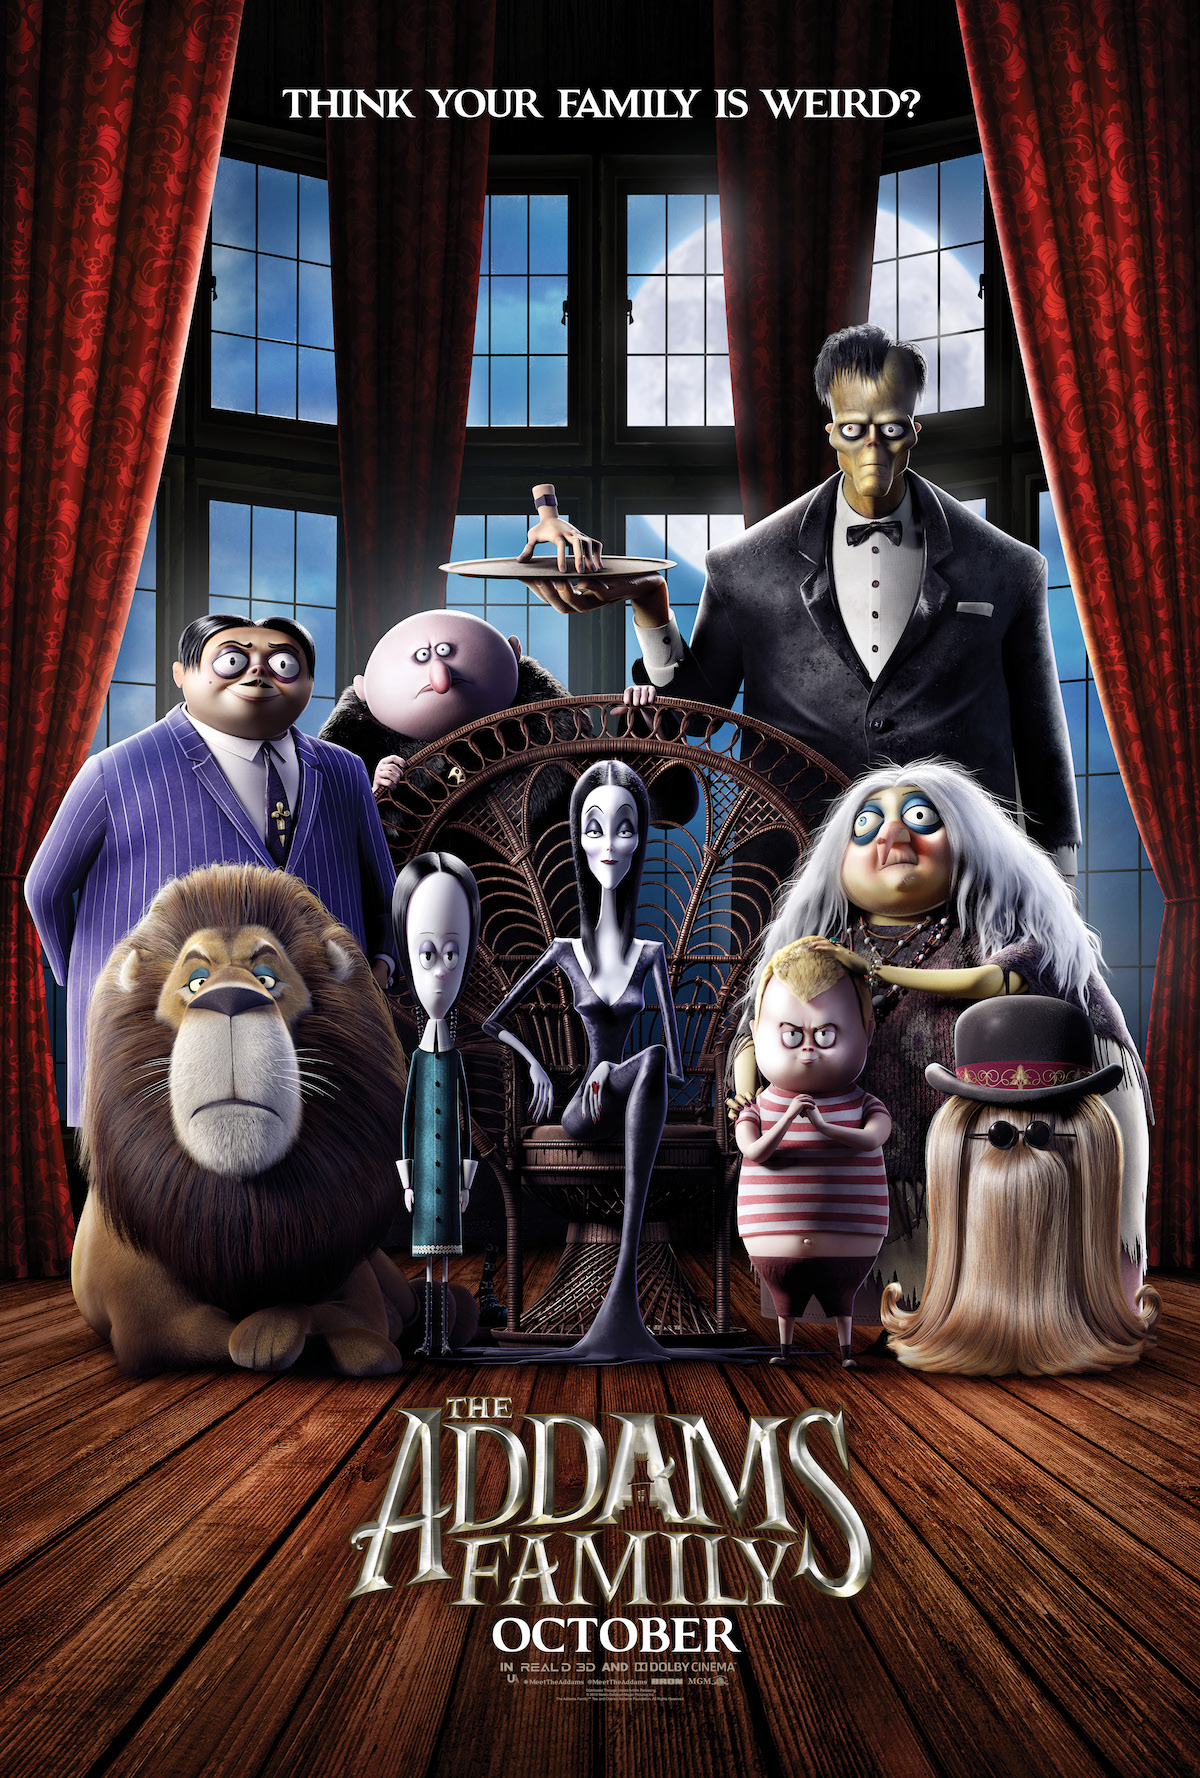 ดูหนังออนไลน์ The Addams Family ตระกูลนี้ผียังหลบ 2019 พากย์ไทย